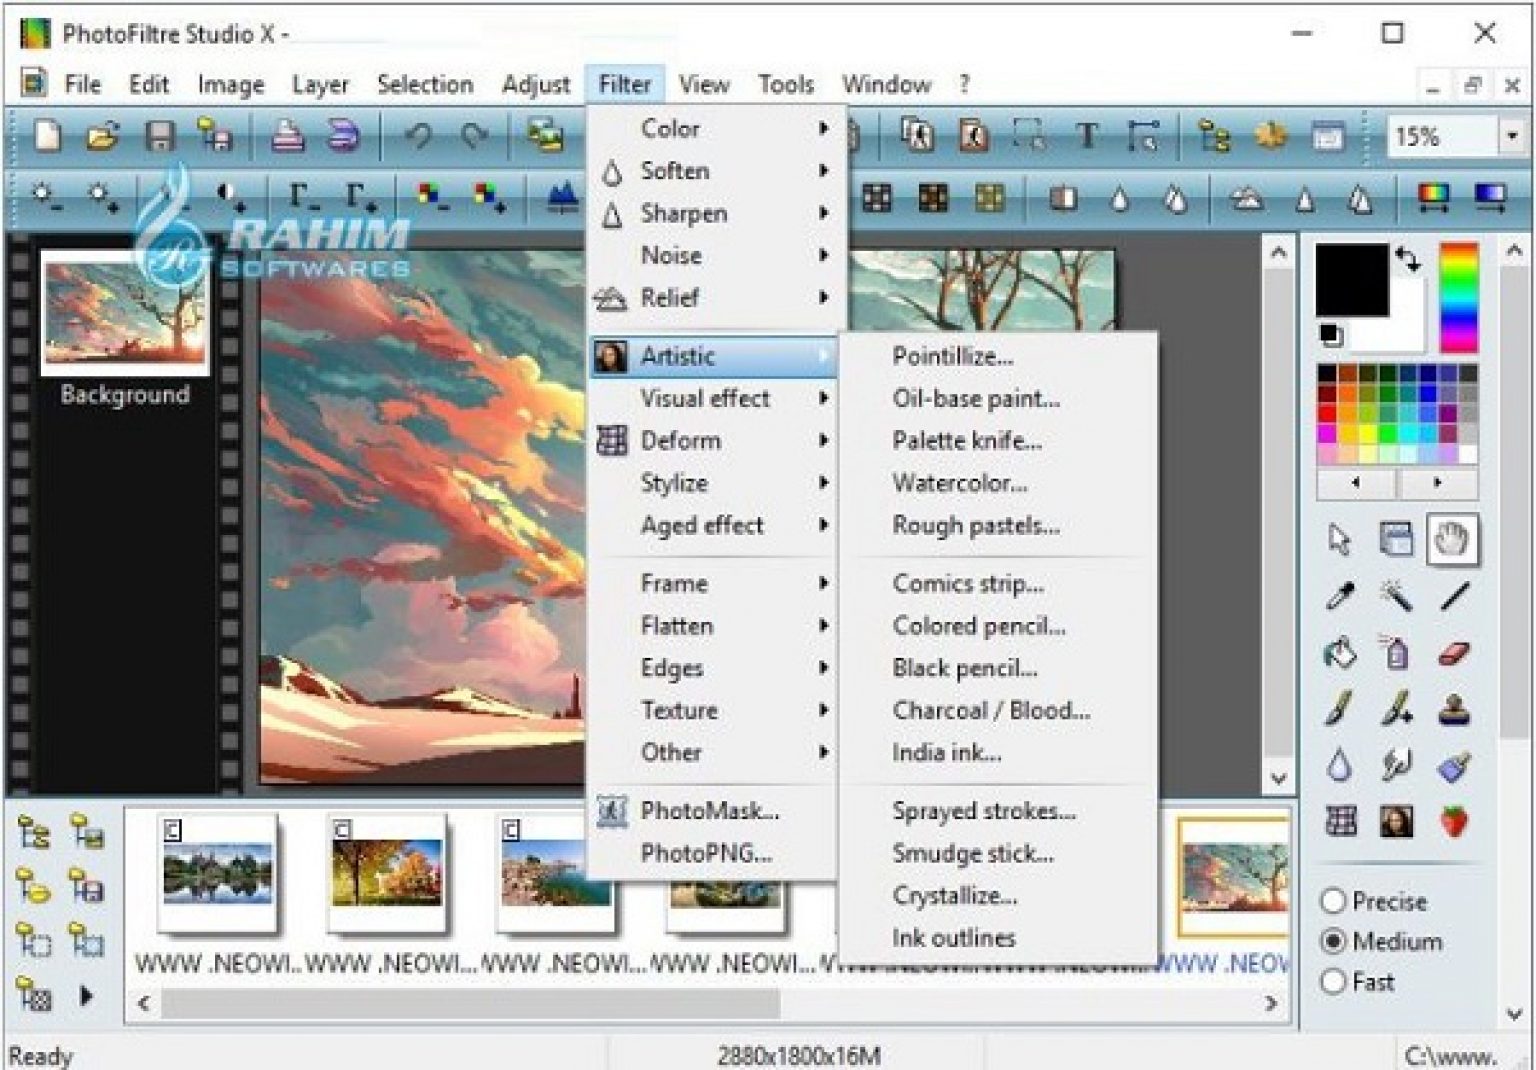 PhotoFiltre Studio 11.5.0 download the new version